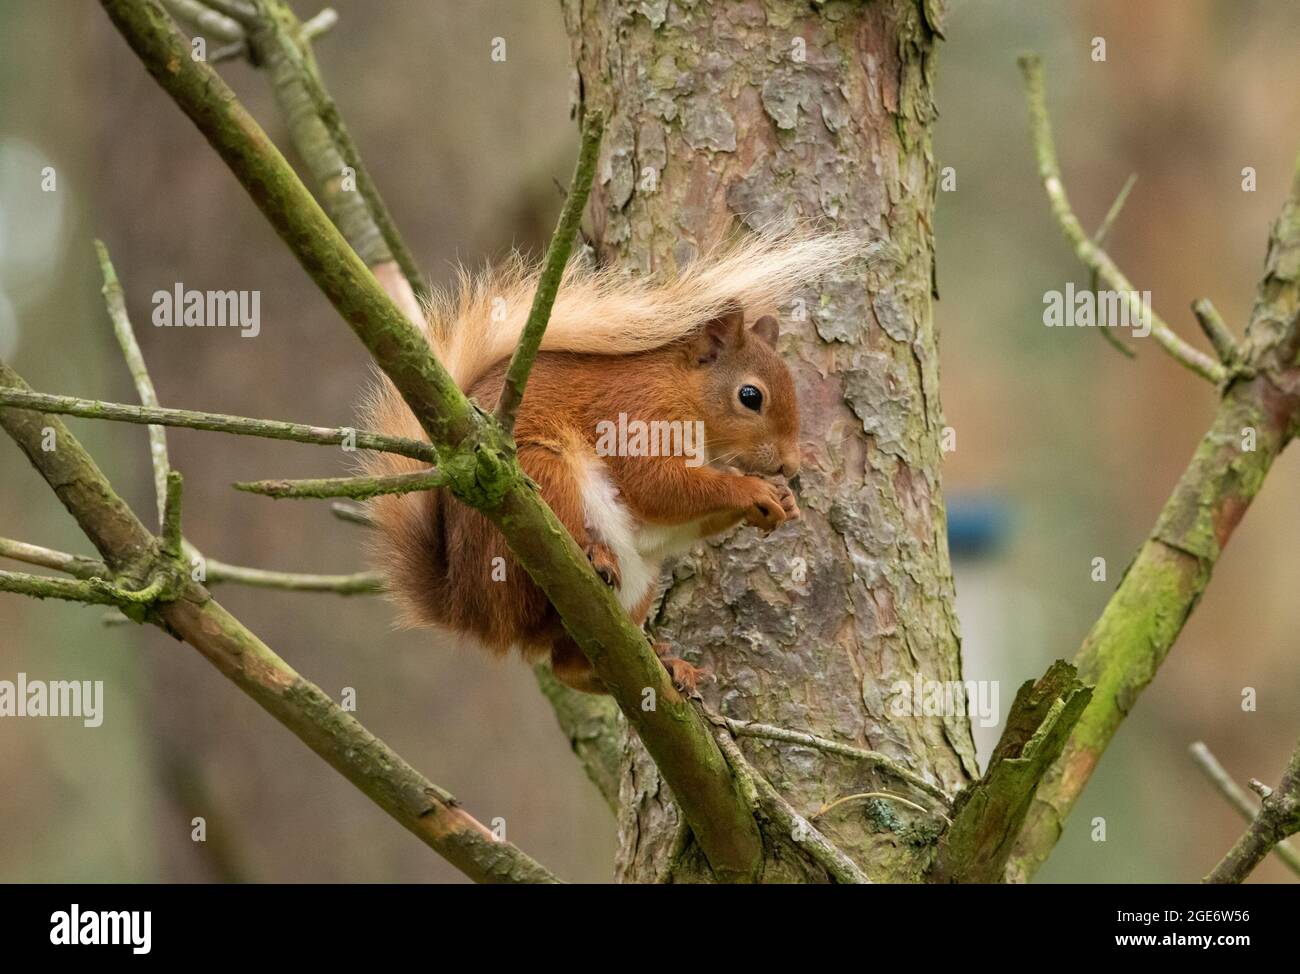 Animal nacional de escocia fotografías e imágenes de alta resolución - Alamy